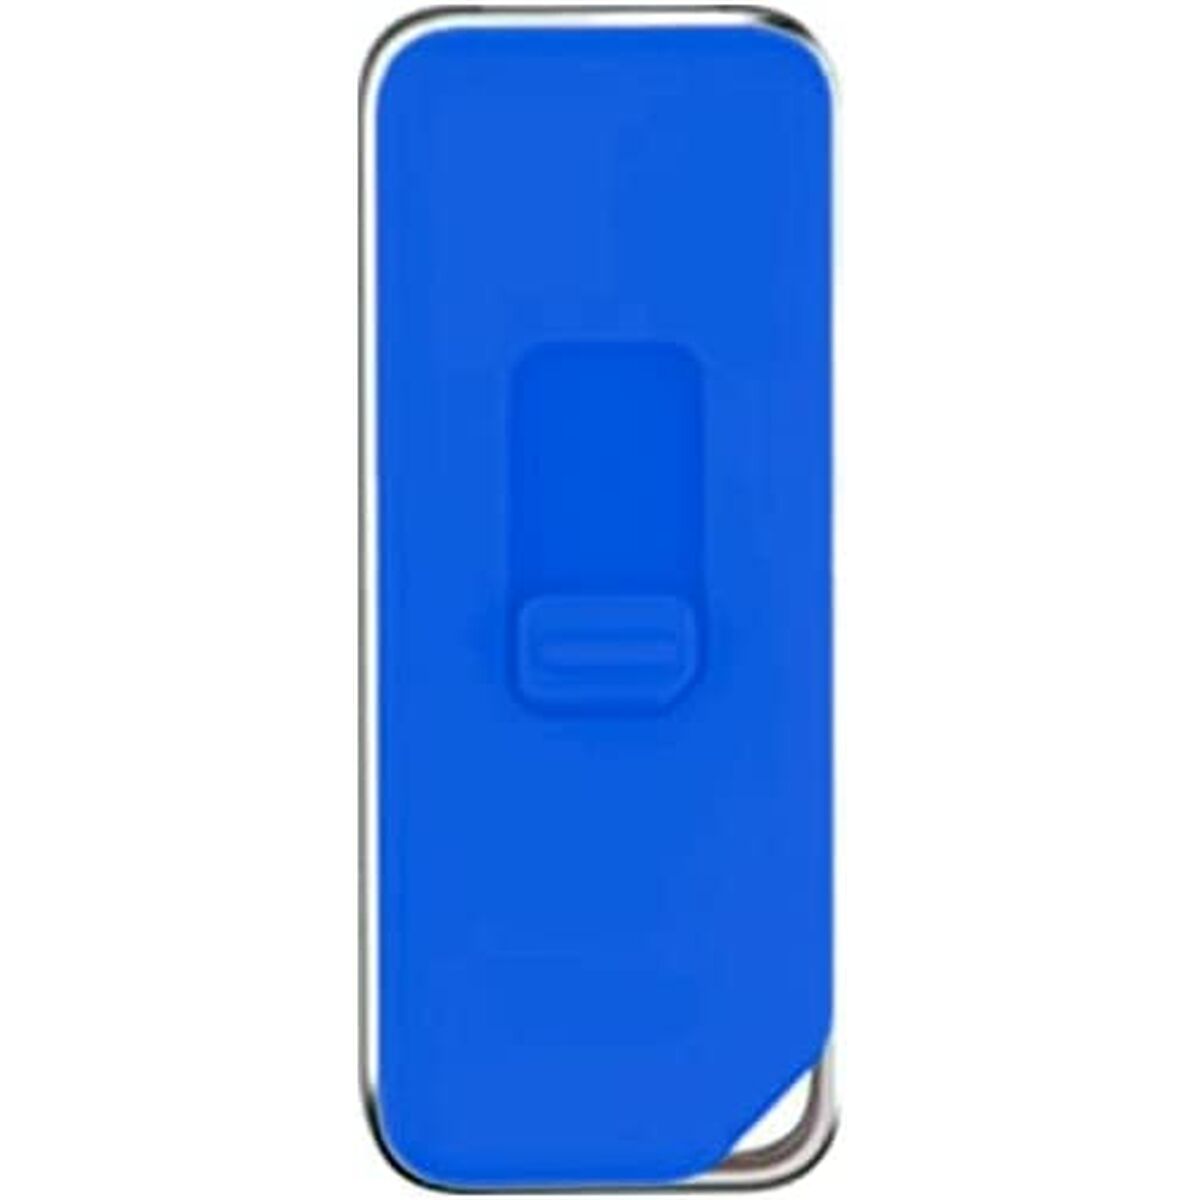 Cooler blauer USB-Stick